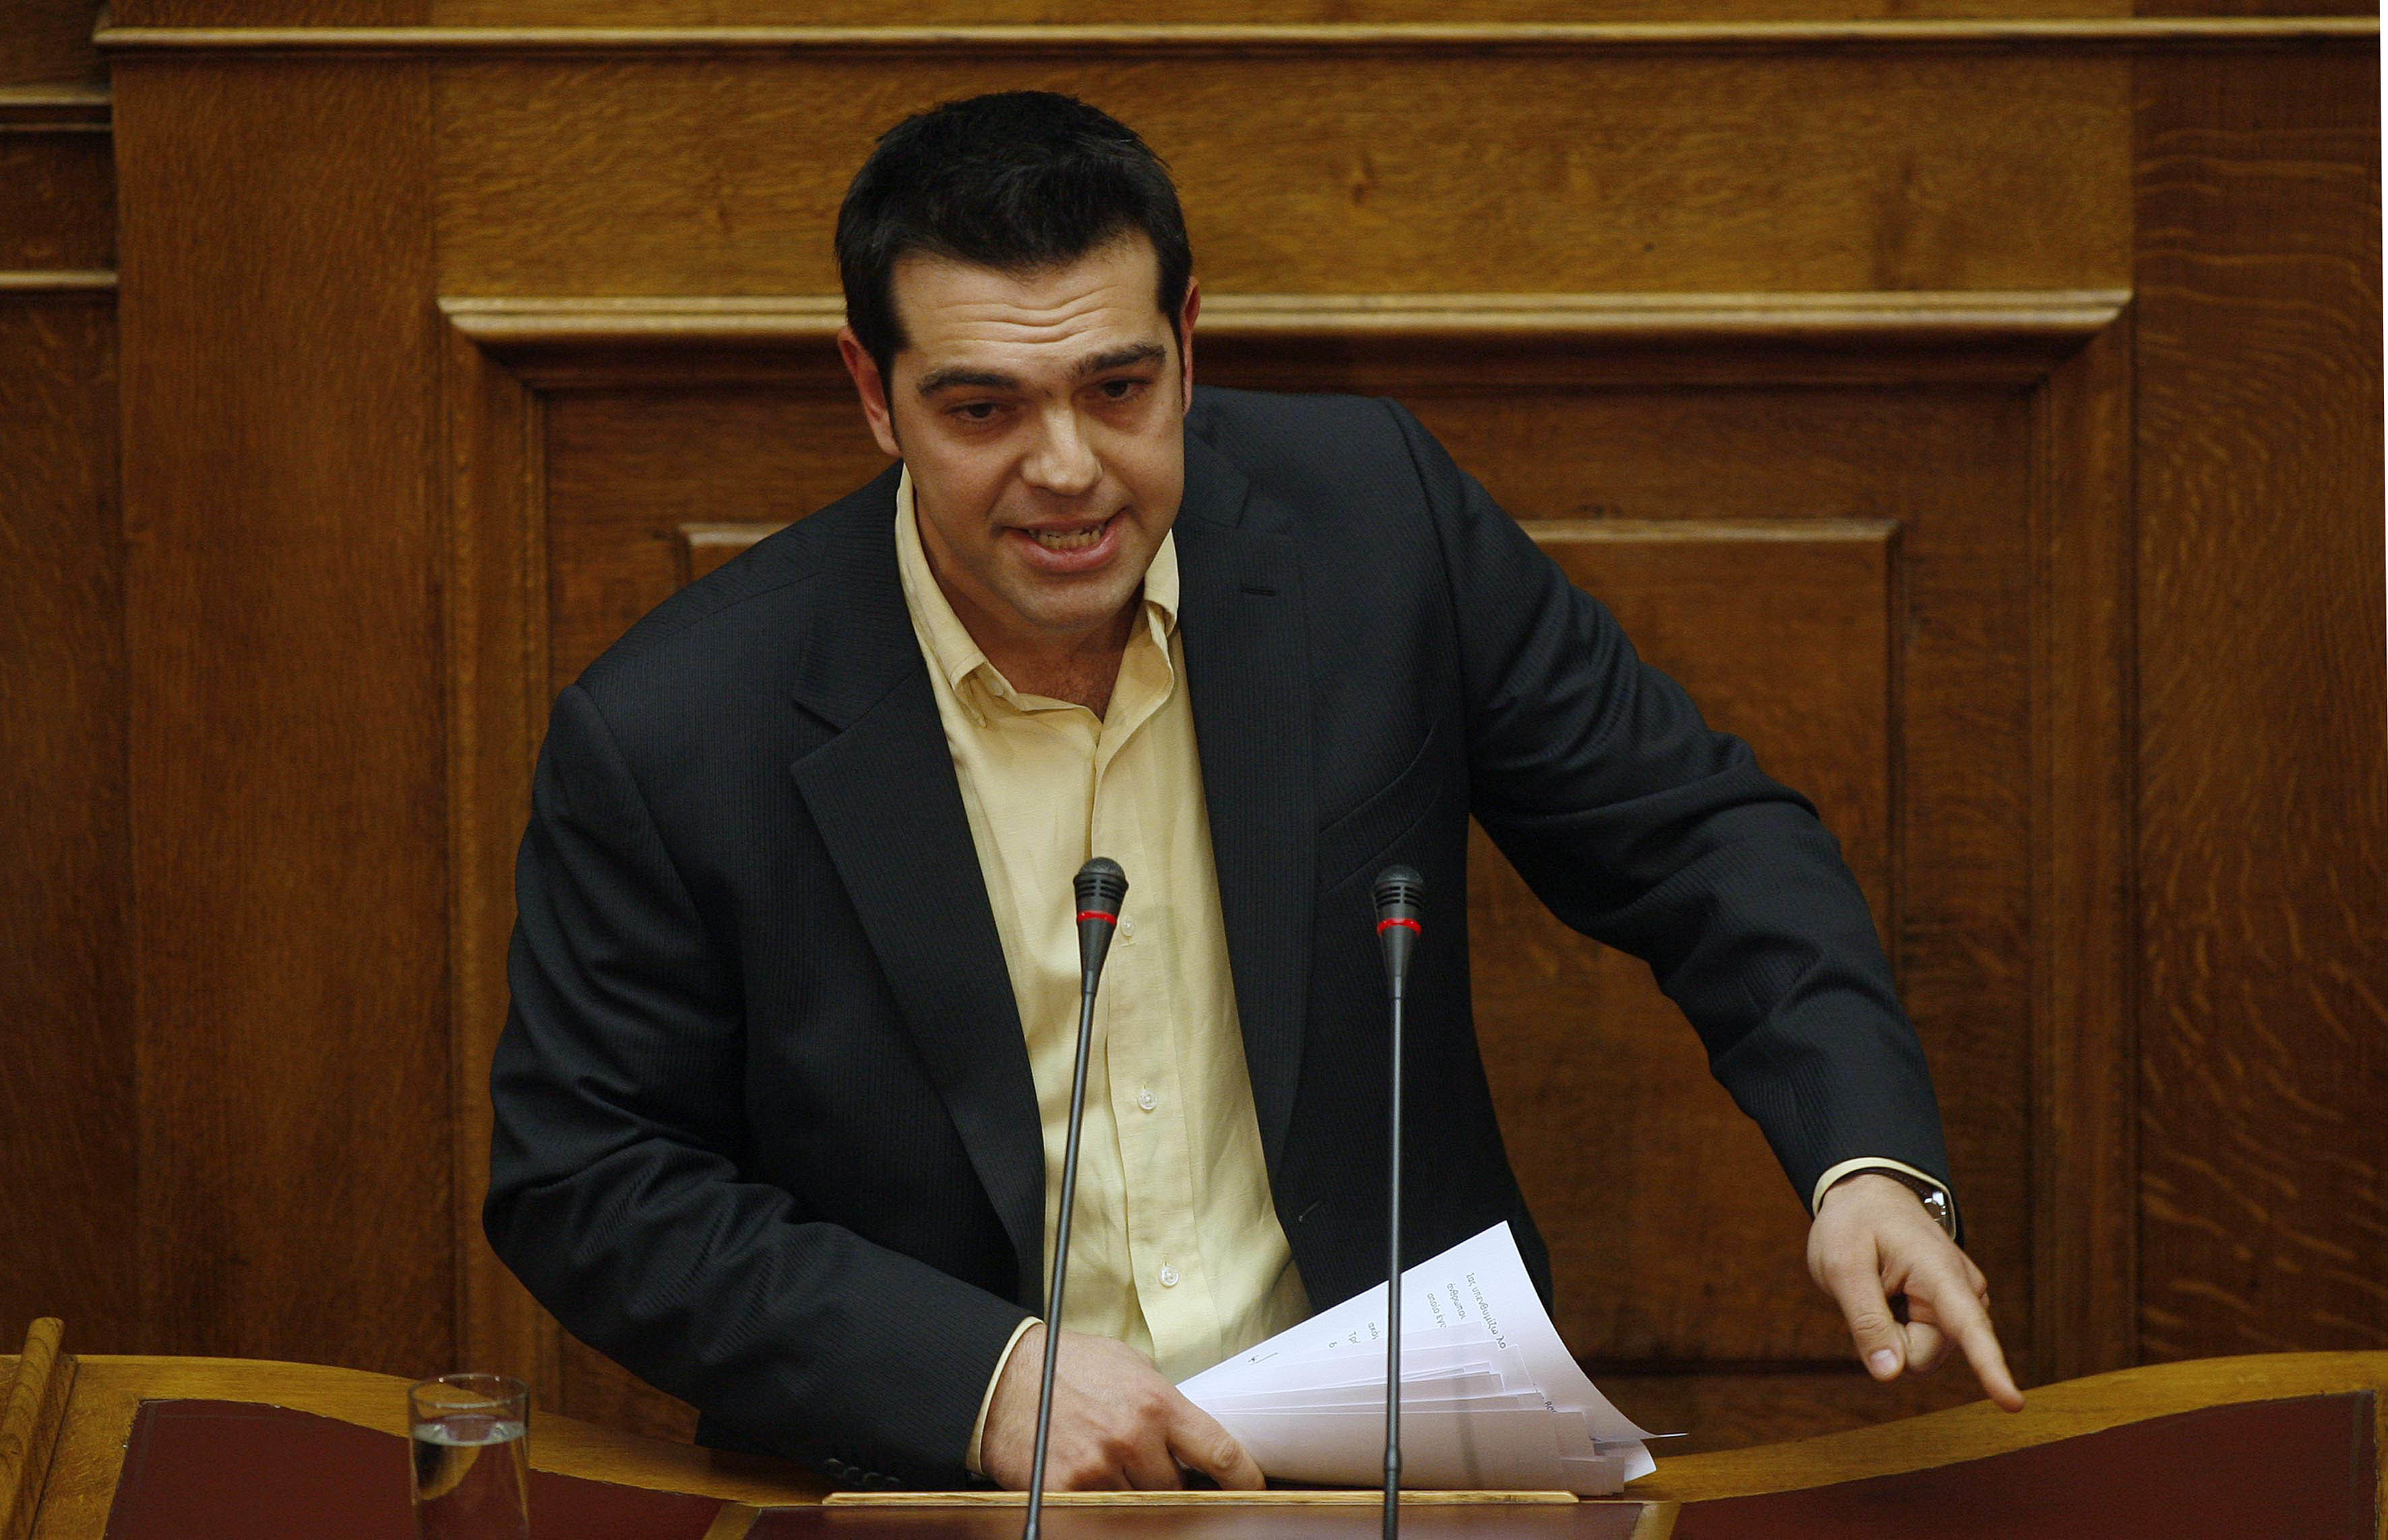 ΣΥΡΙΖΑ για τα νέα μέτρα: “Έγραψαν στα παλιά τους τα παπούτσια τους τις δεσμεύσεις τους”